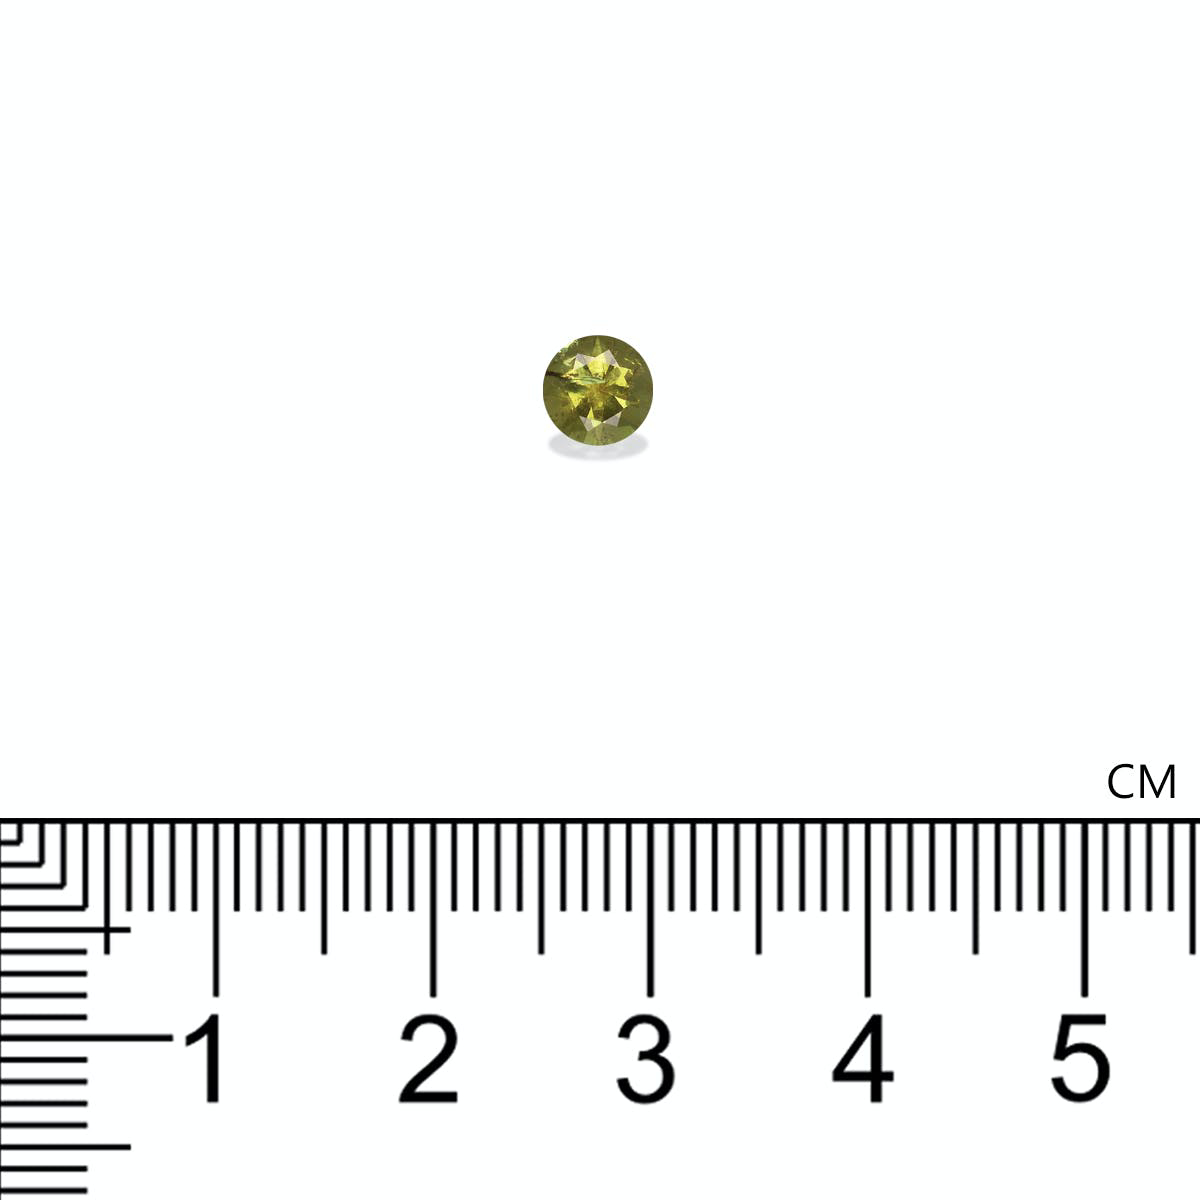 Picture of Olive Green Demantoid Garnet 0.60ct - 5mm (DG0060)